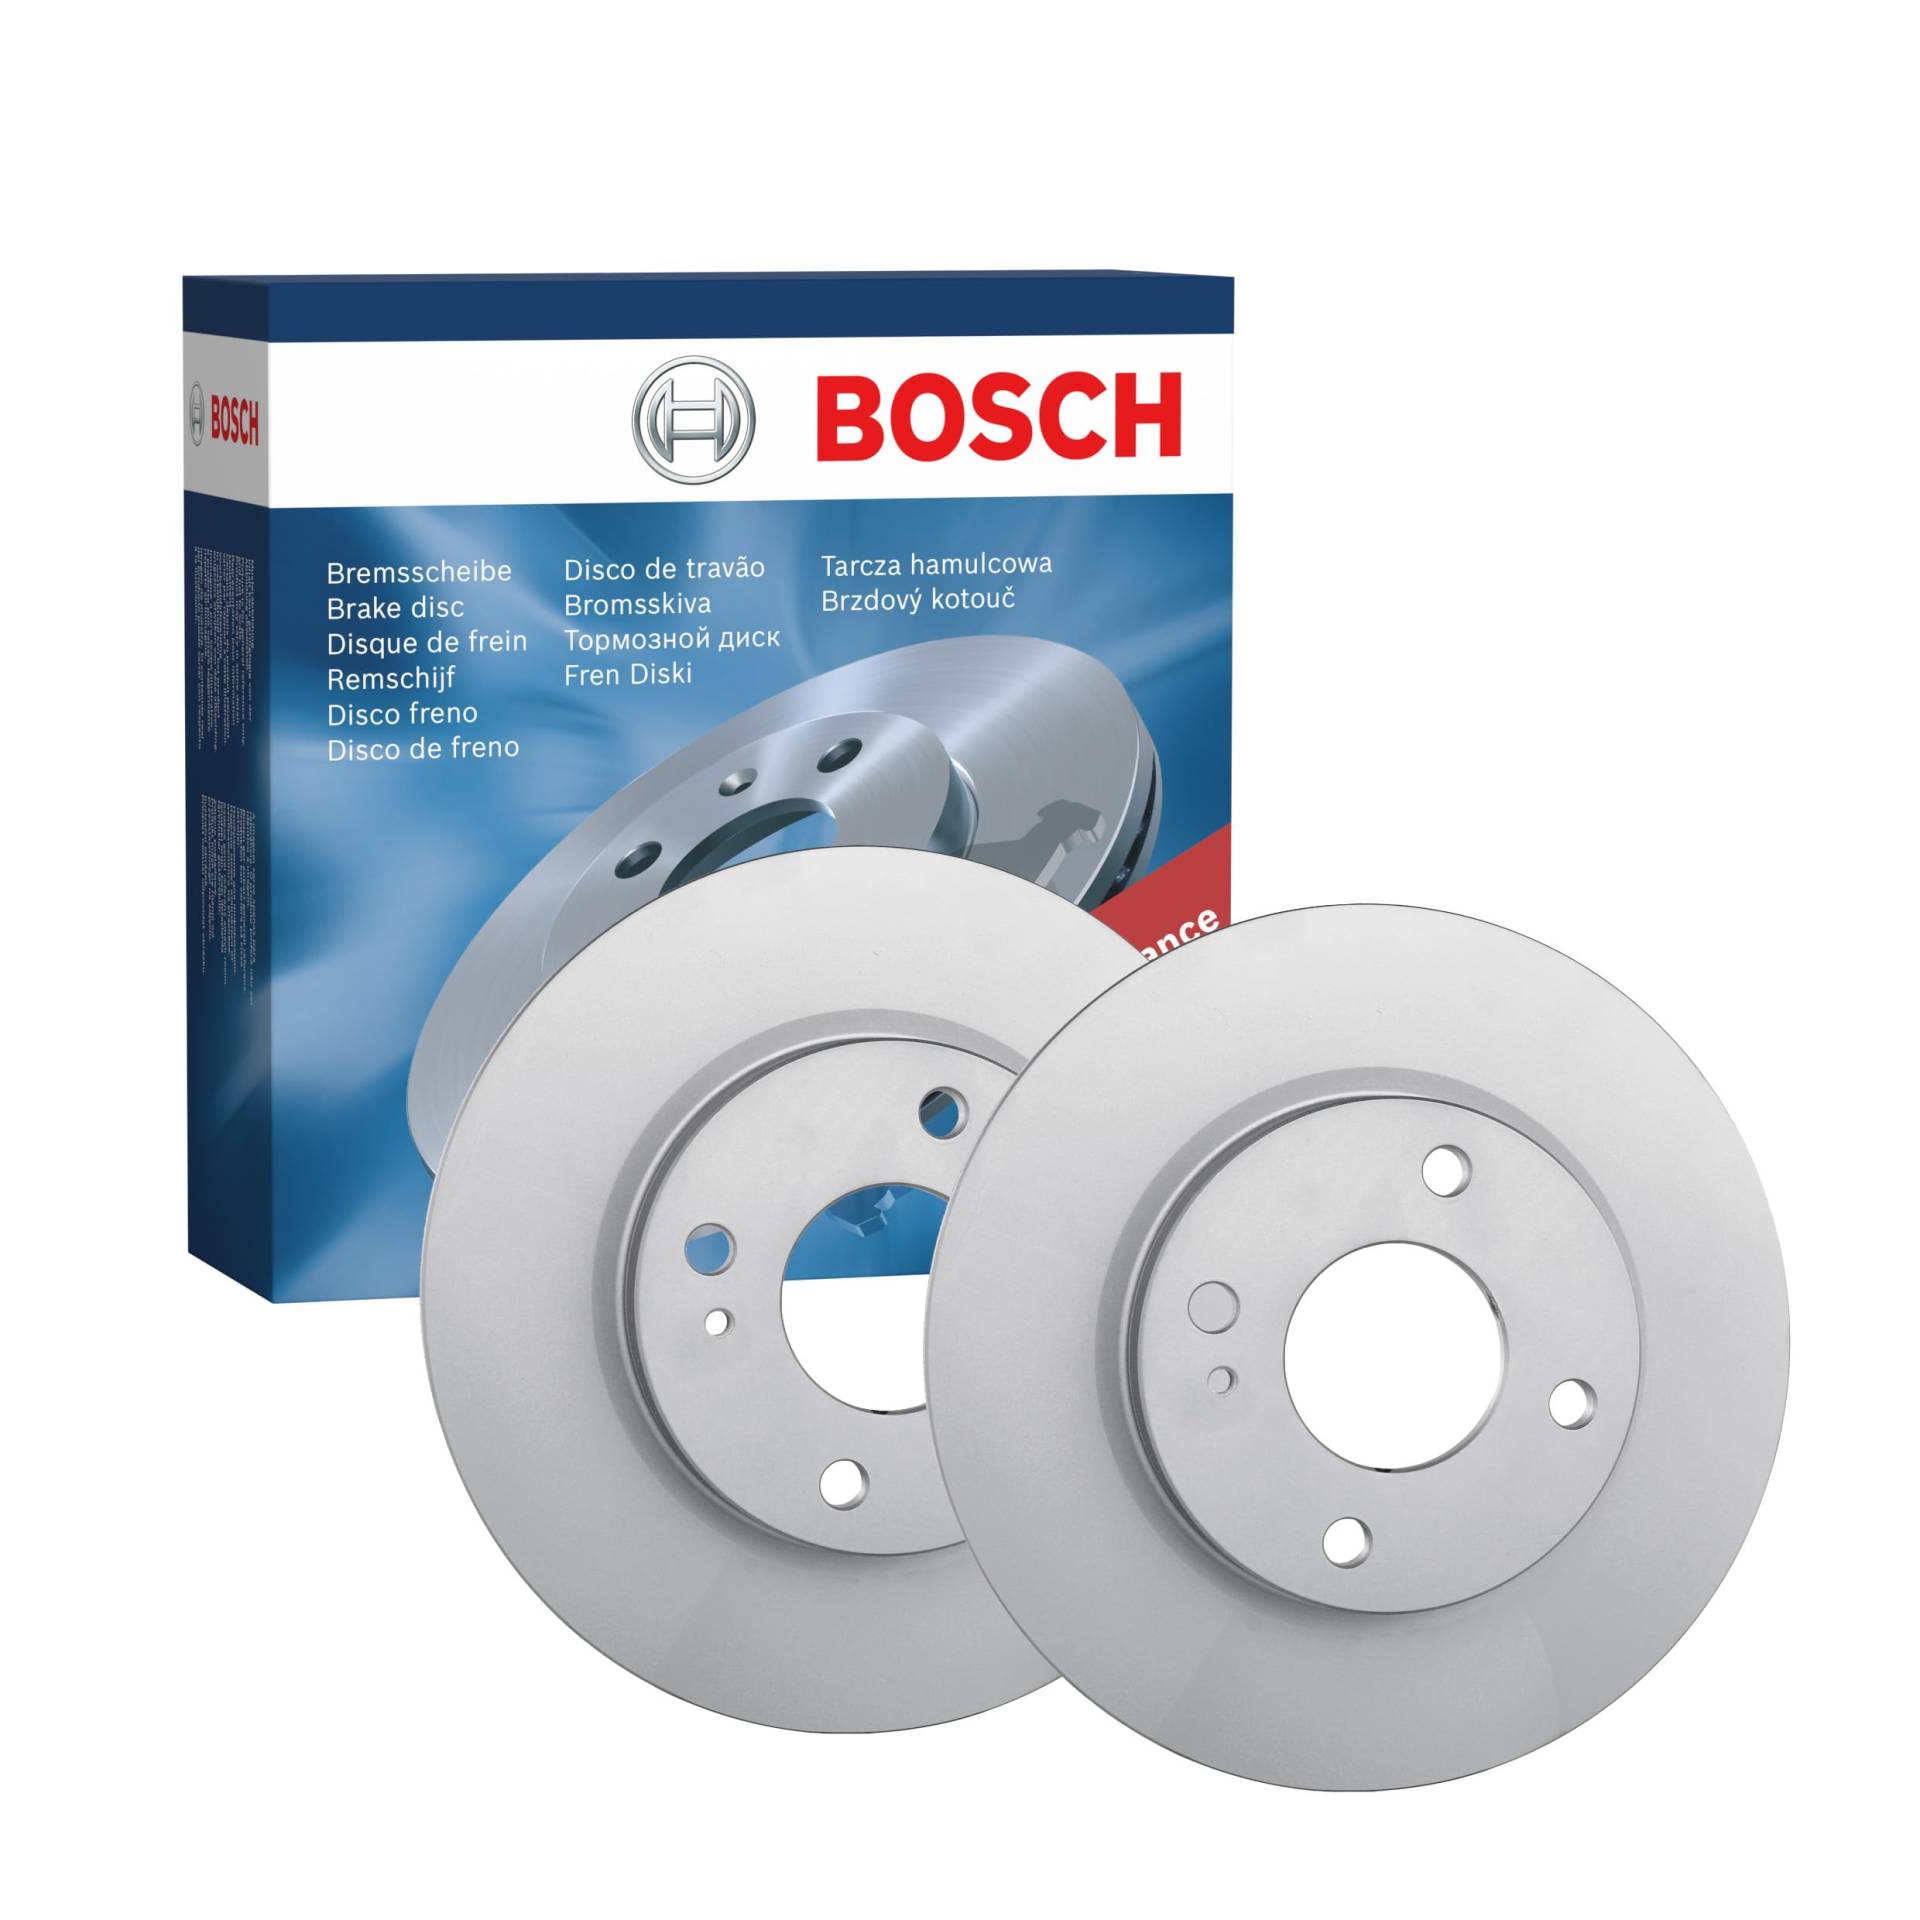 Bosch BD1409 Bremsscheiben - Vorderachse - ECE-R90 Zertifizierung - zwei Bremsscheiben pro Set , 2 Stück (1er Pack) von Bosch Automotive